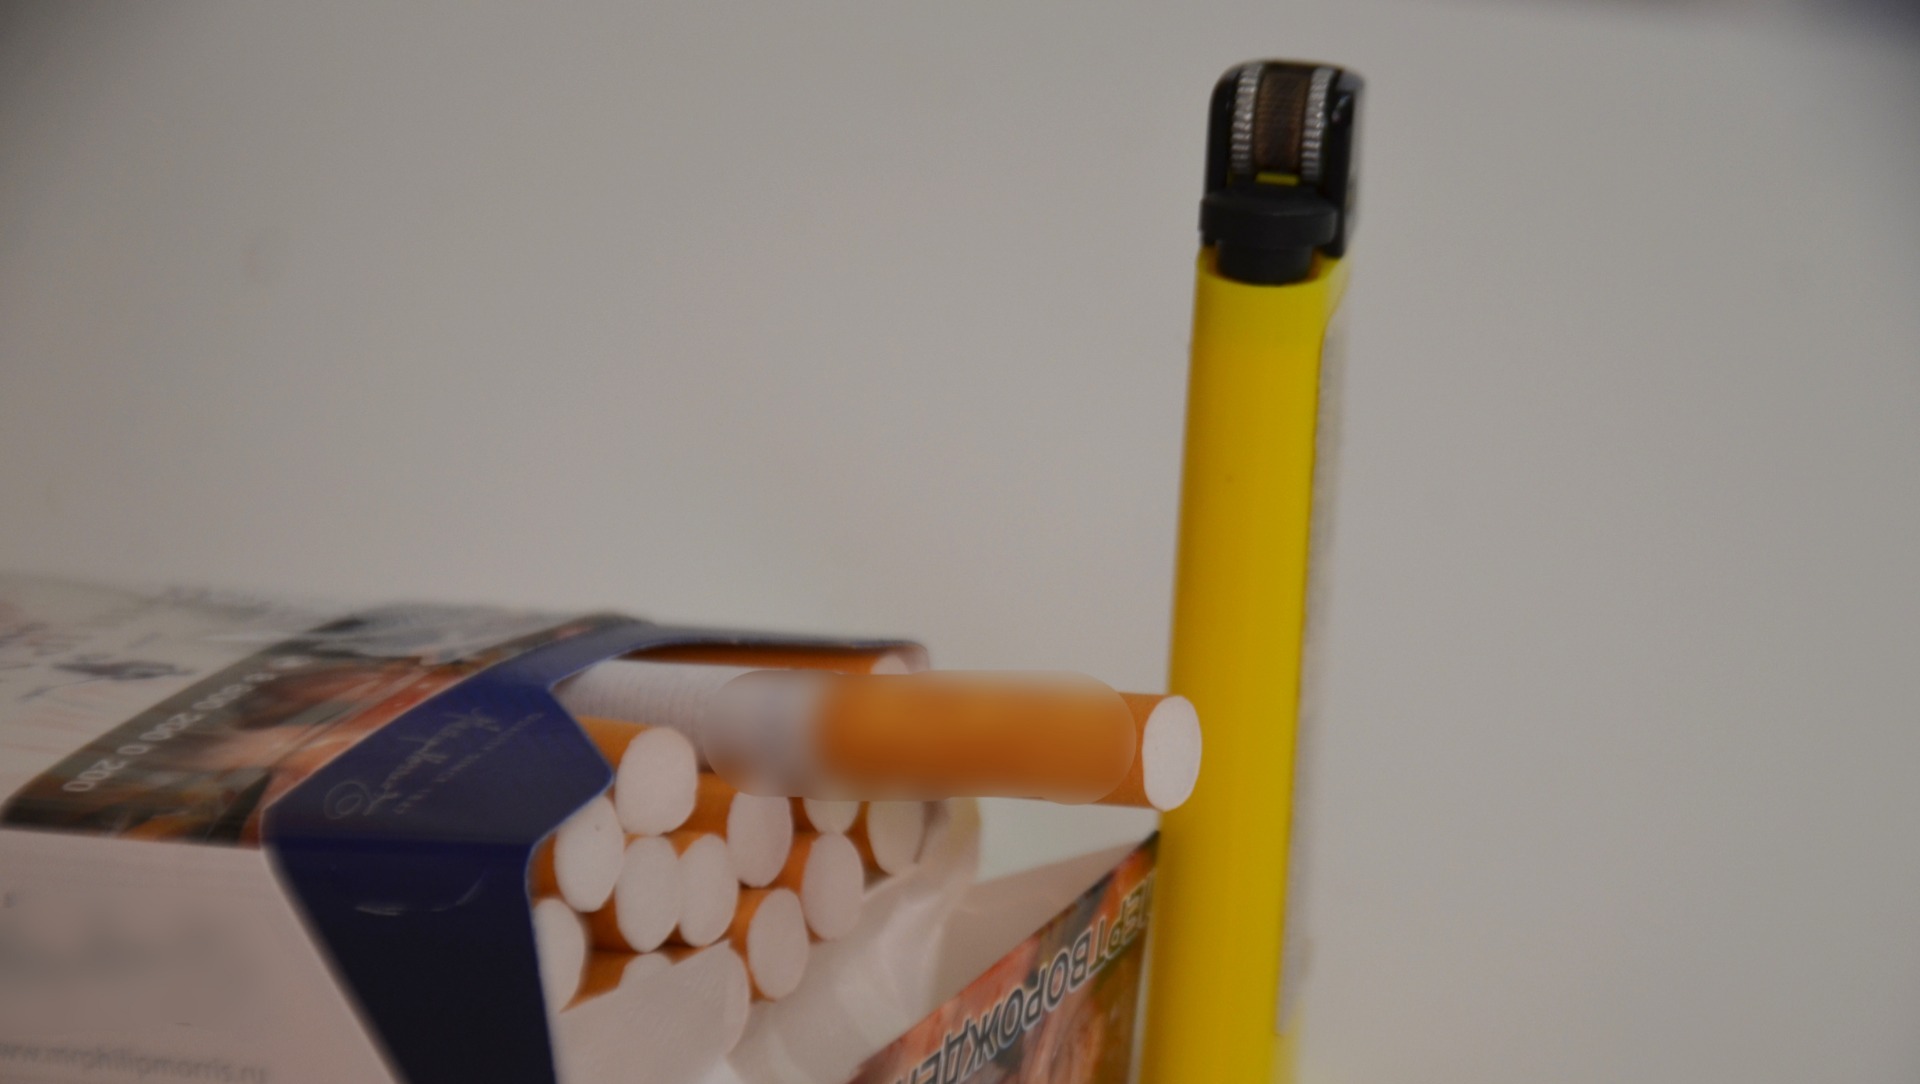 Японцы сменят название ростовским сигаретам «Донской табак» на «Русский стиль»